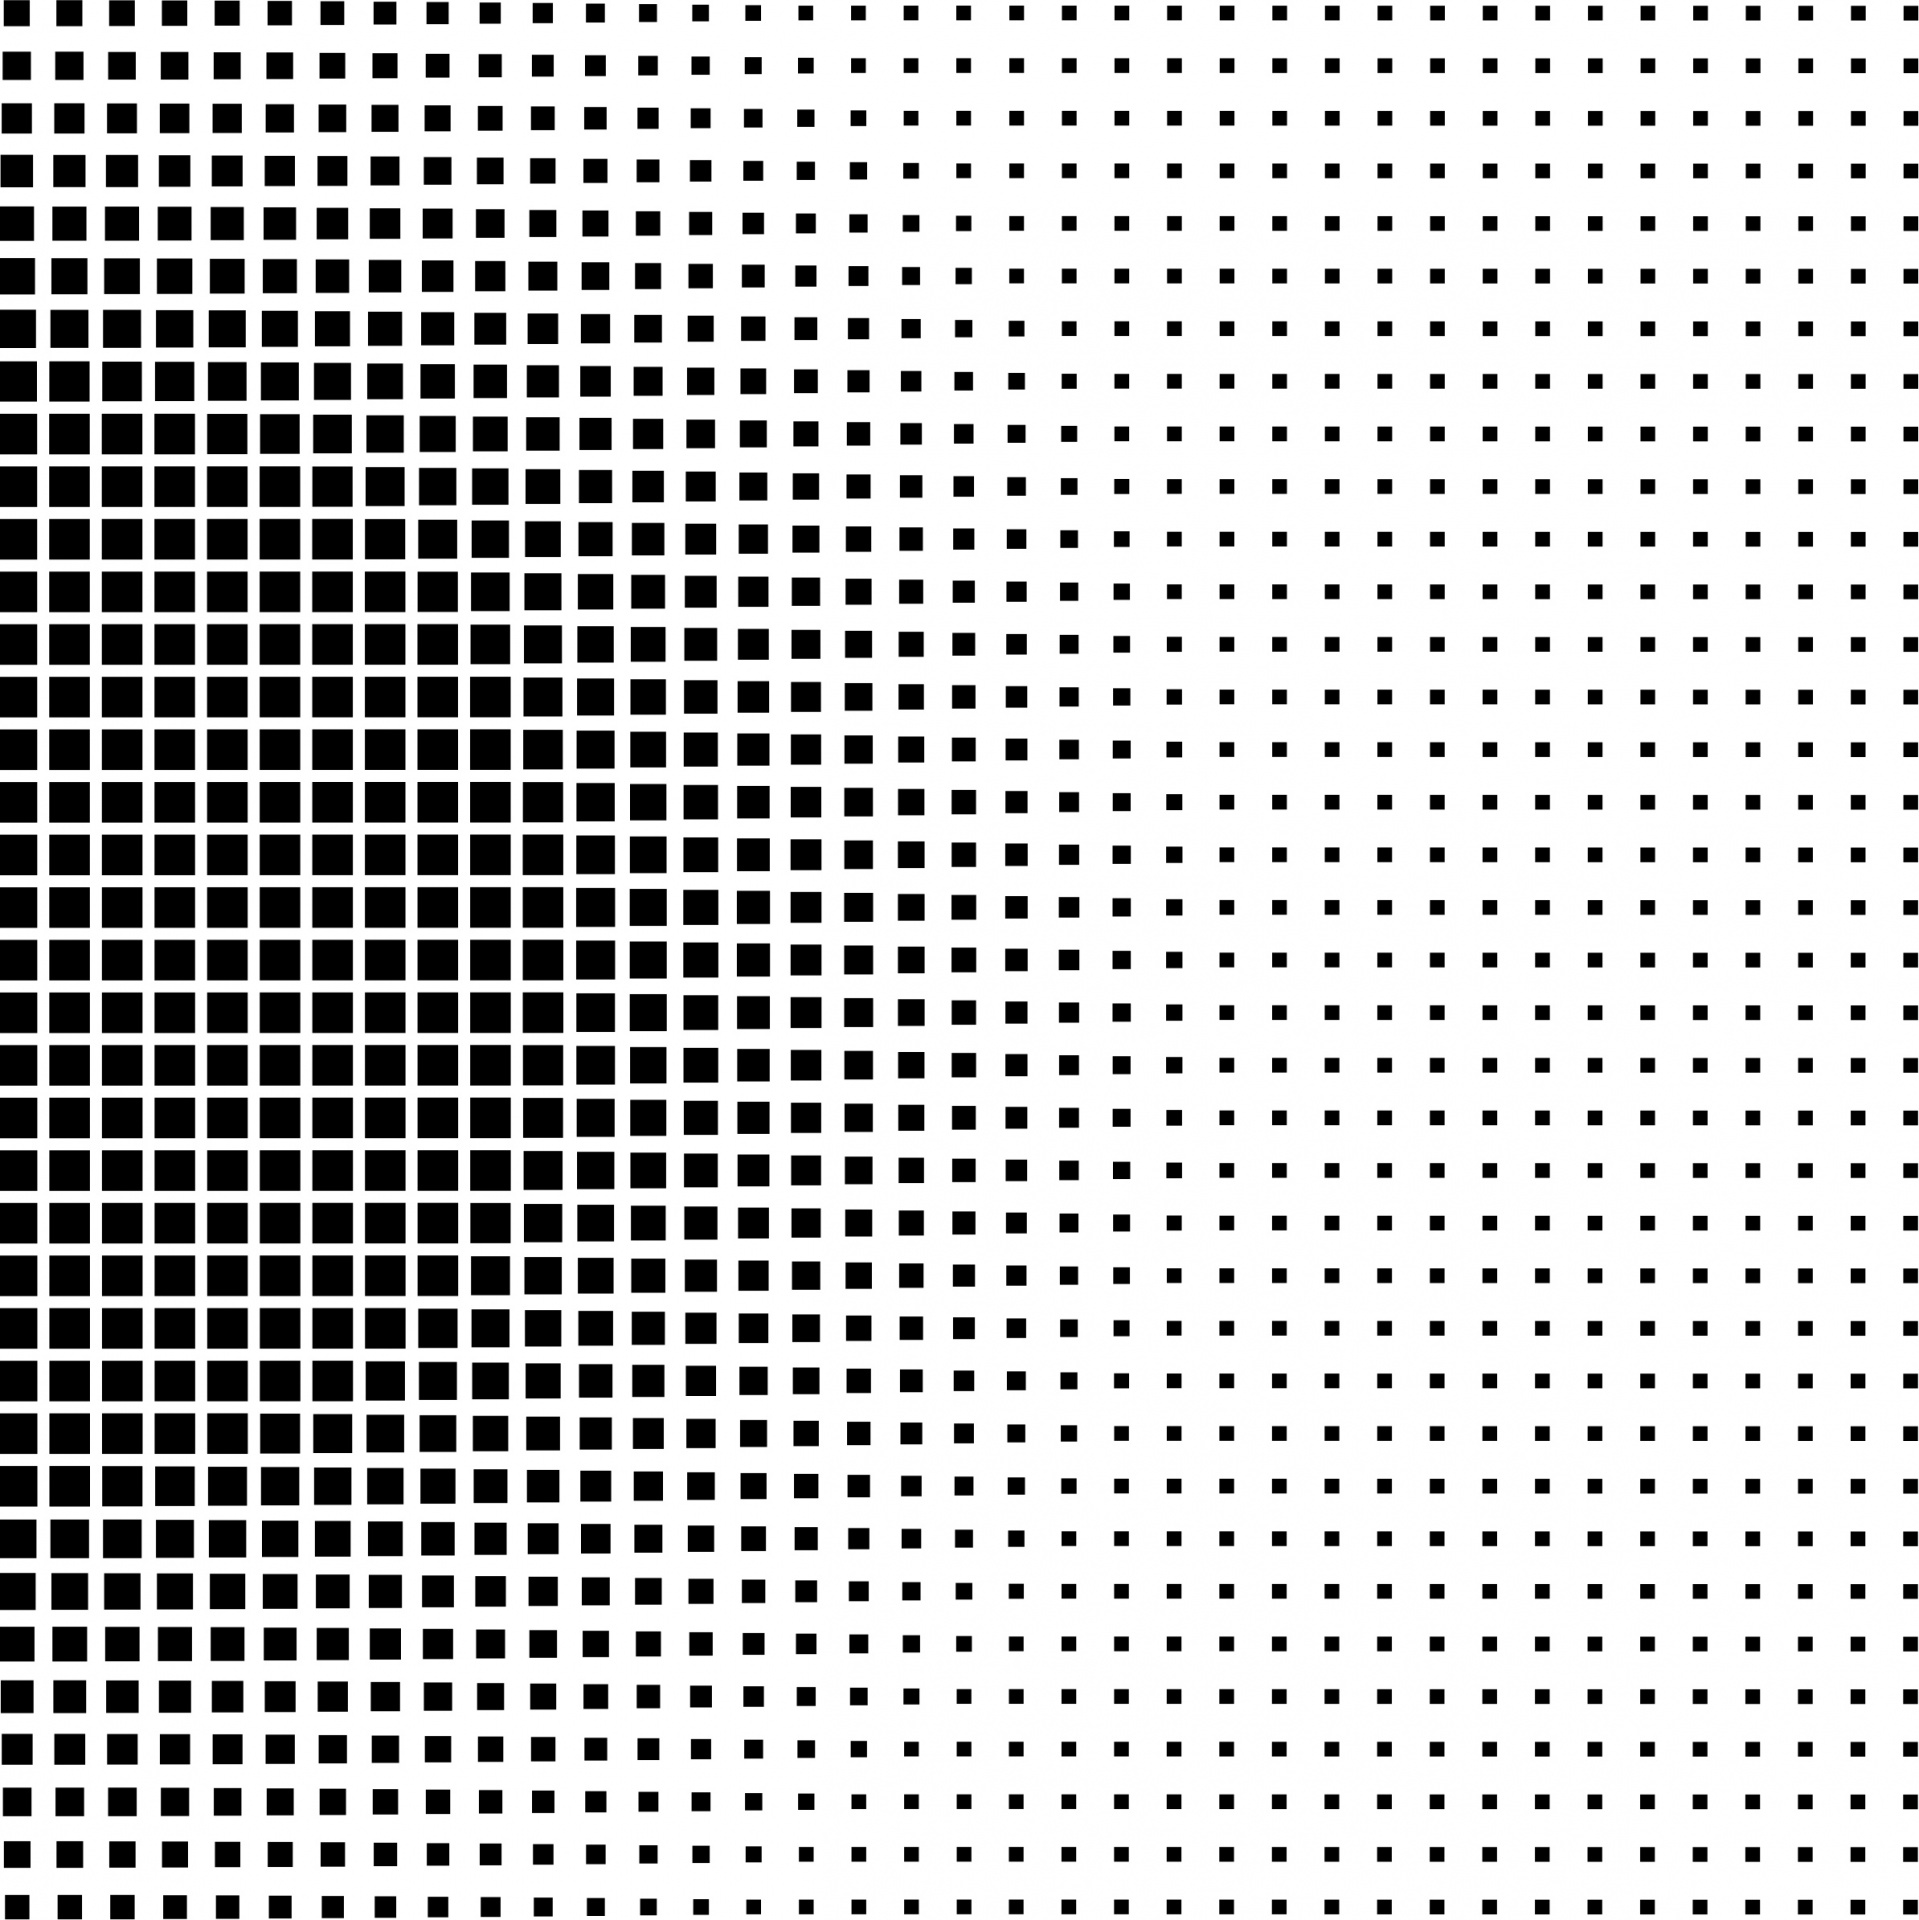 pattern surface dots free photo